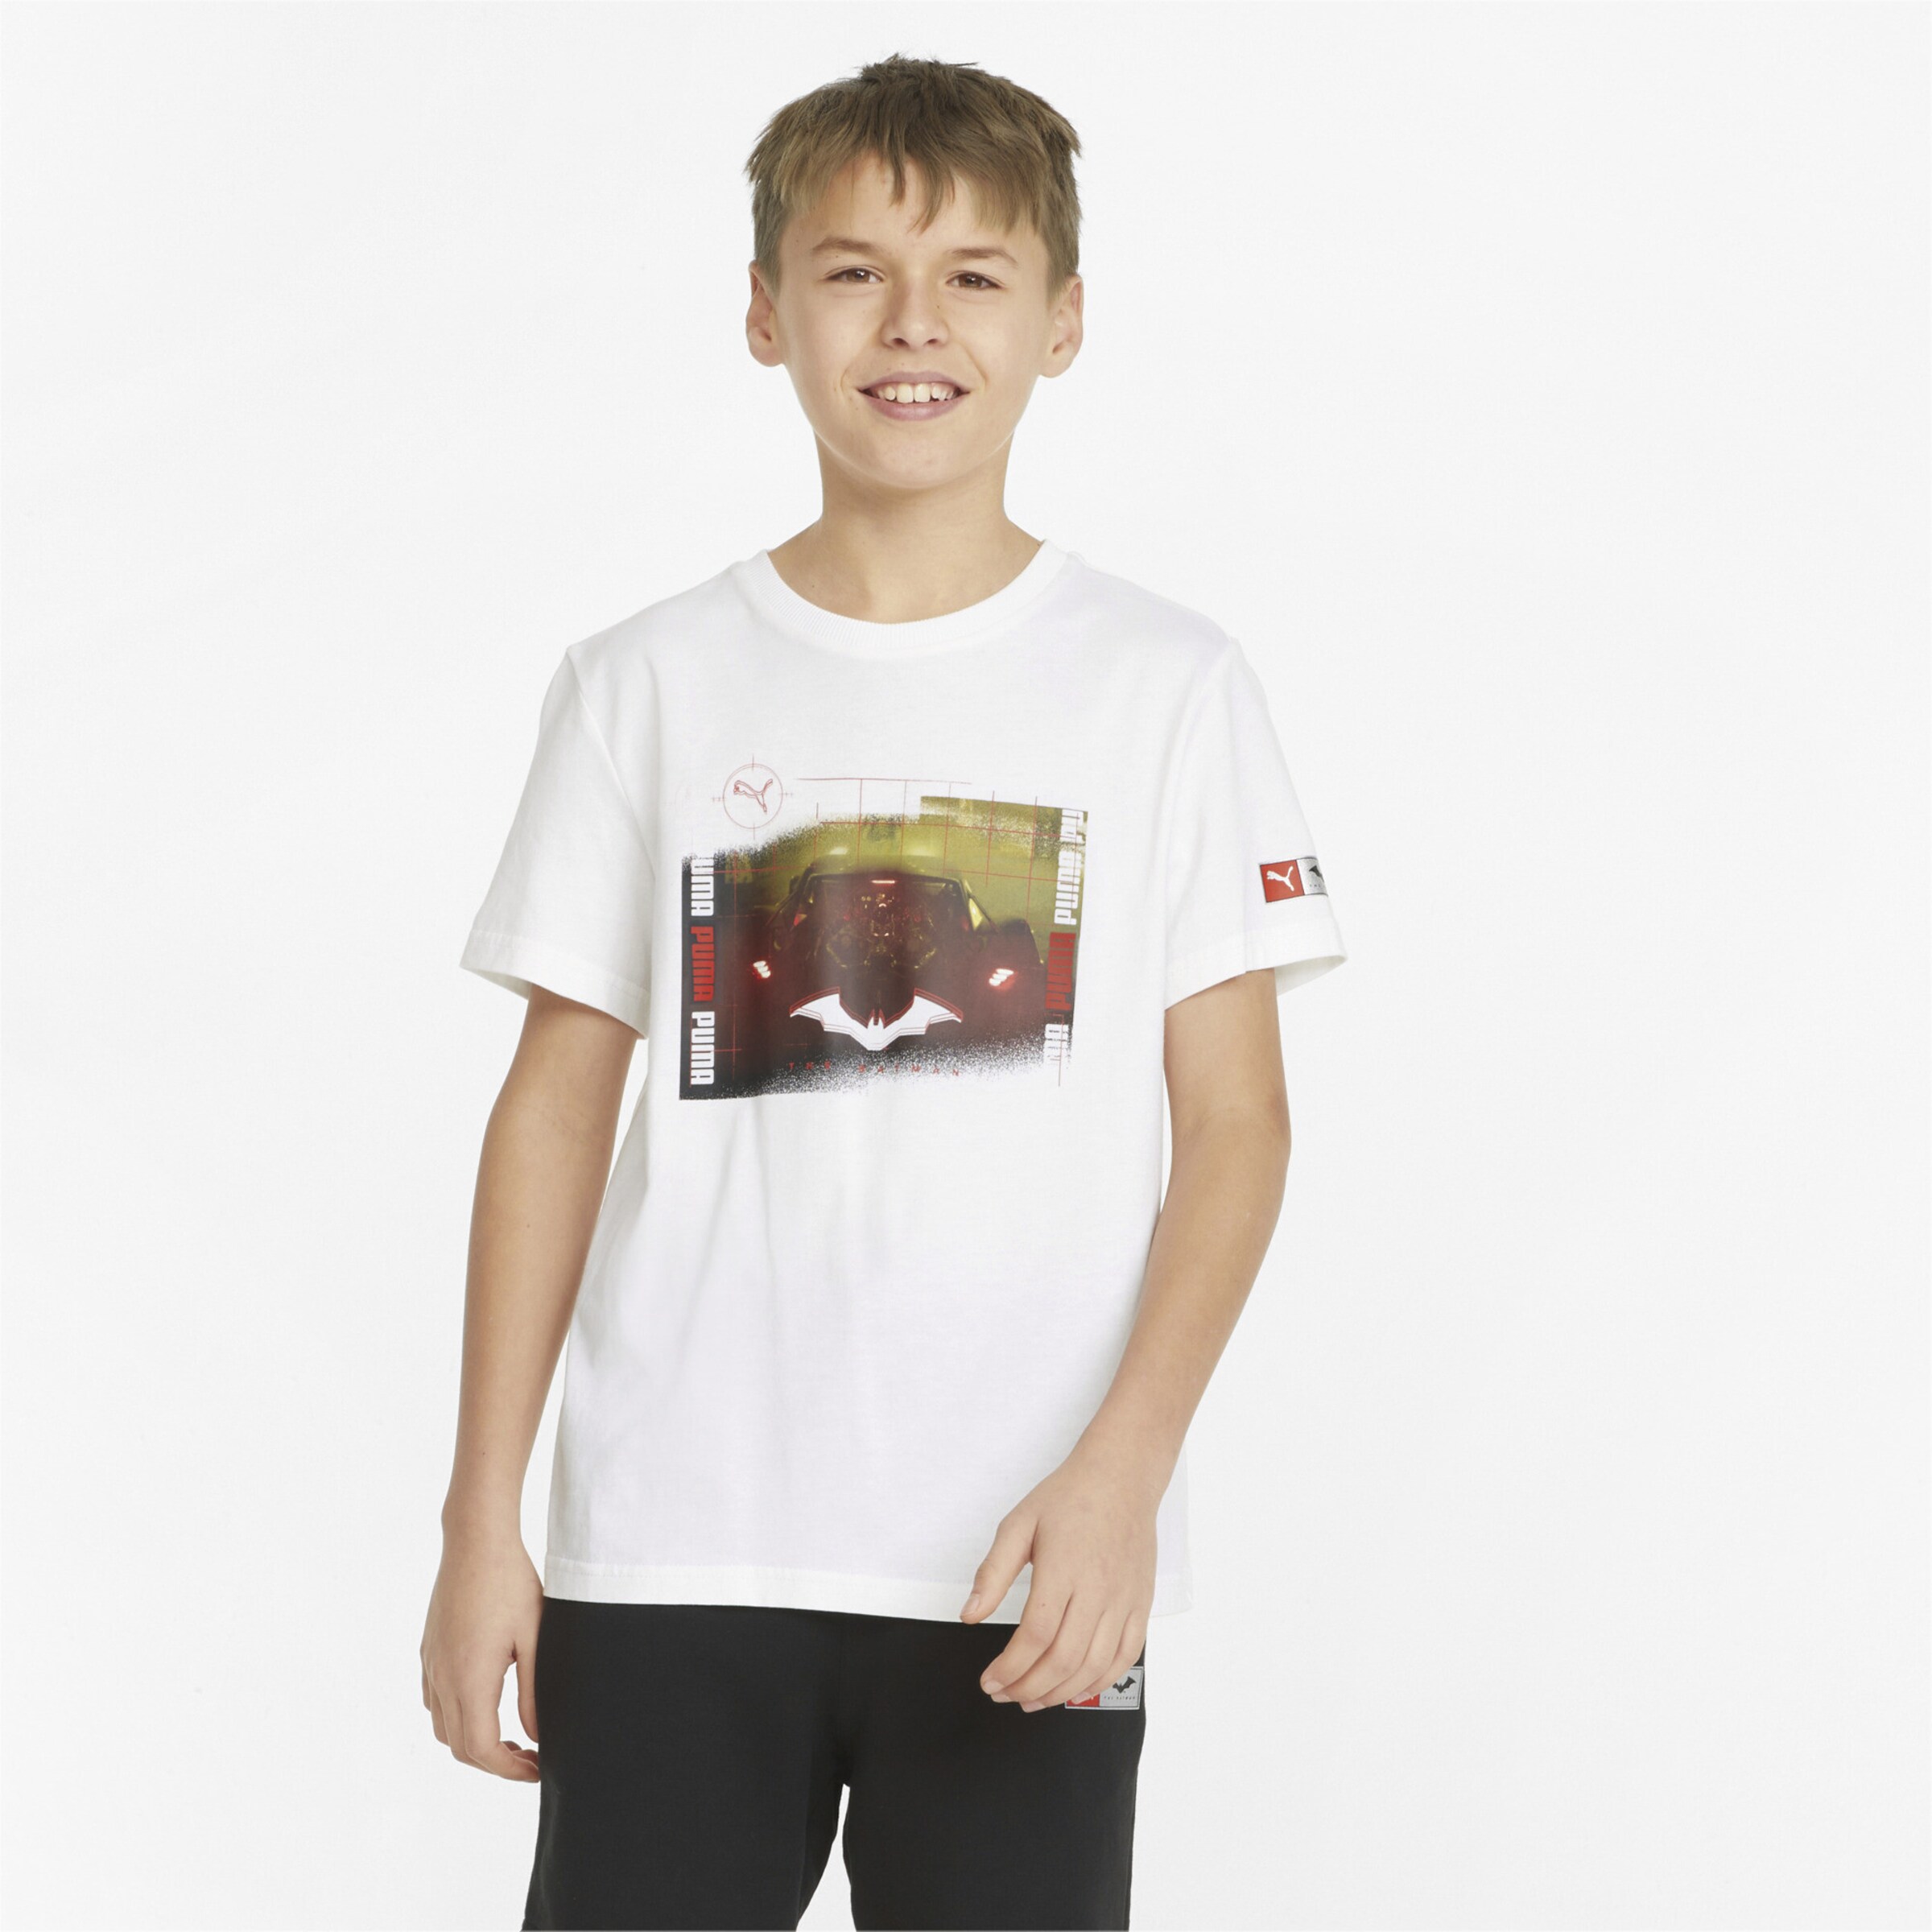 Jungen Bekleidung Shirts T-Shirts DE 152 PUMA Jungen T-Shirt Gr 